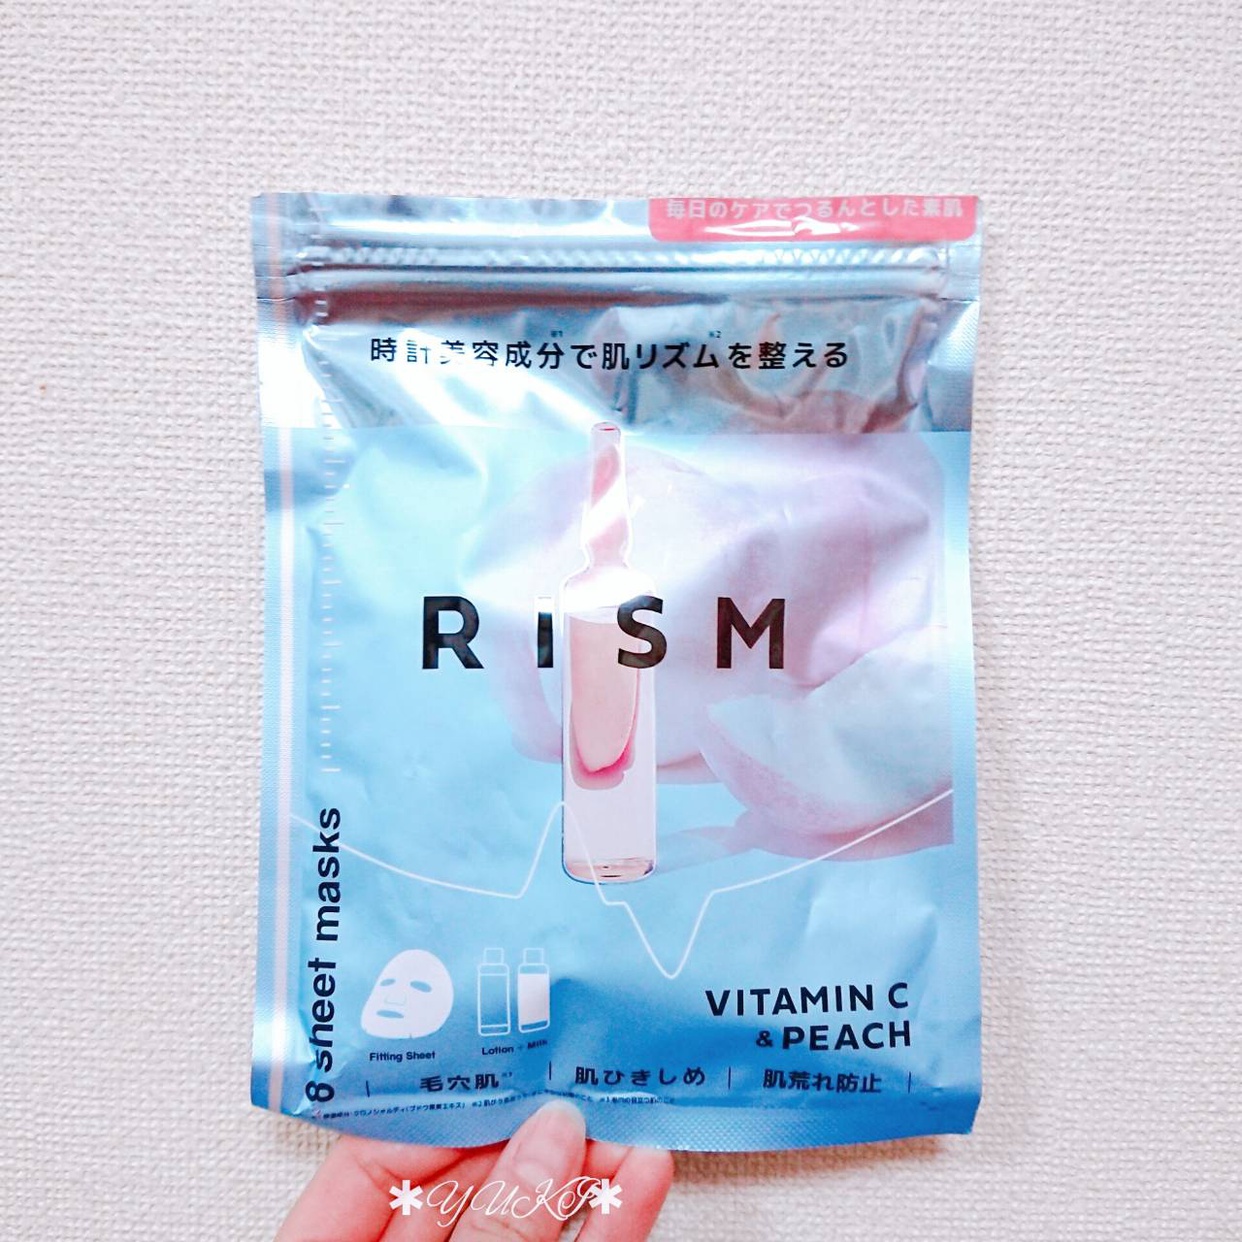 RISM(リズム) ディープケアマスクを使ったYUKIさんのクチコミ画像1